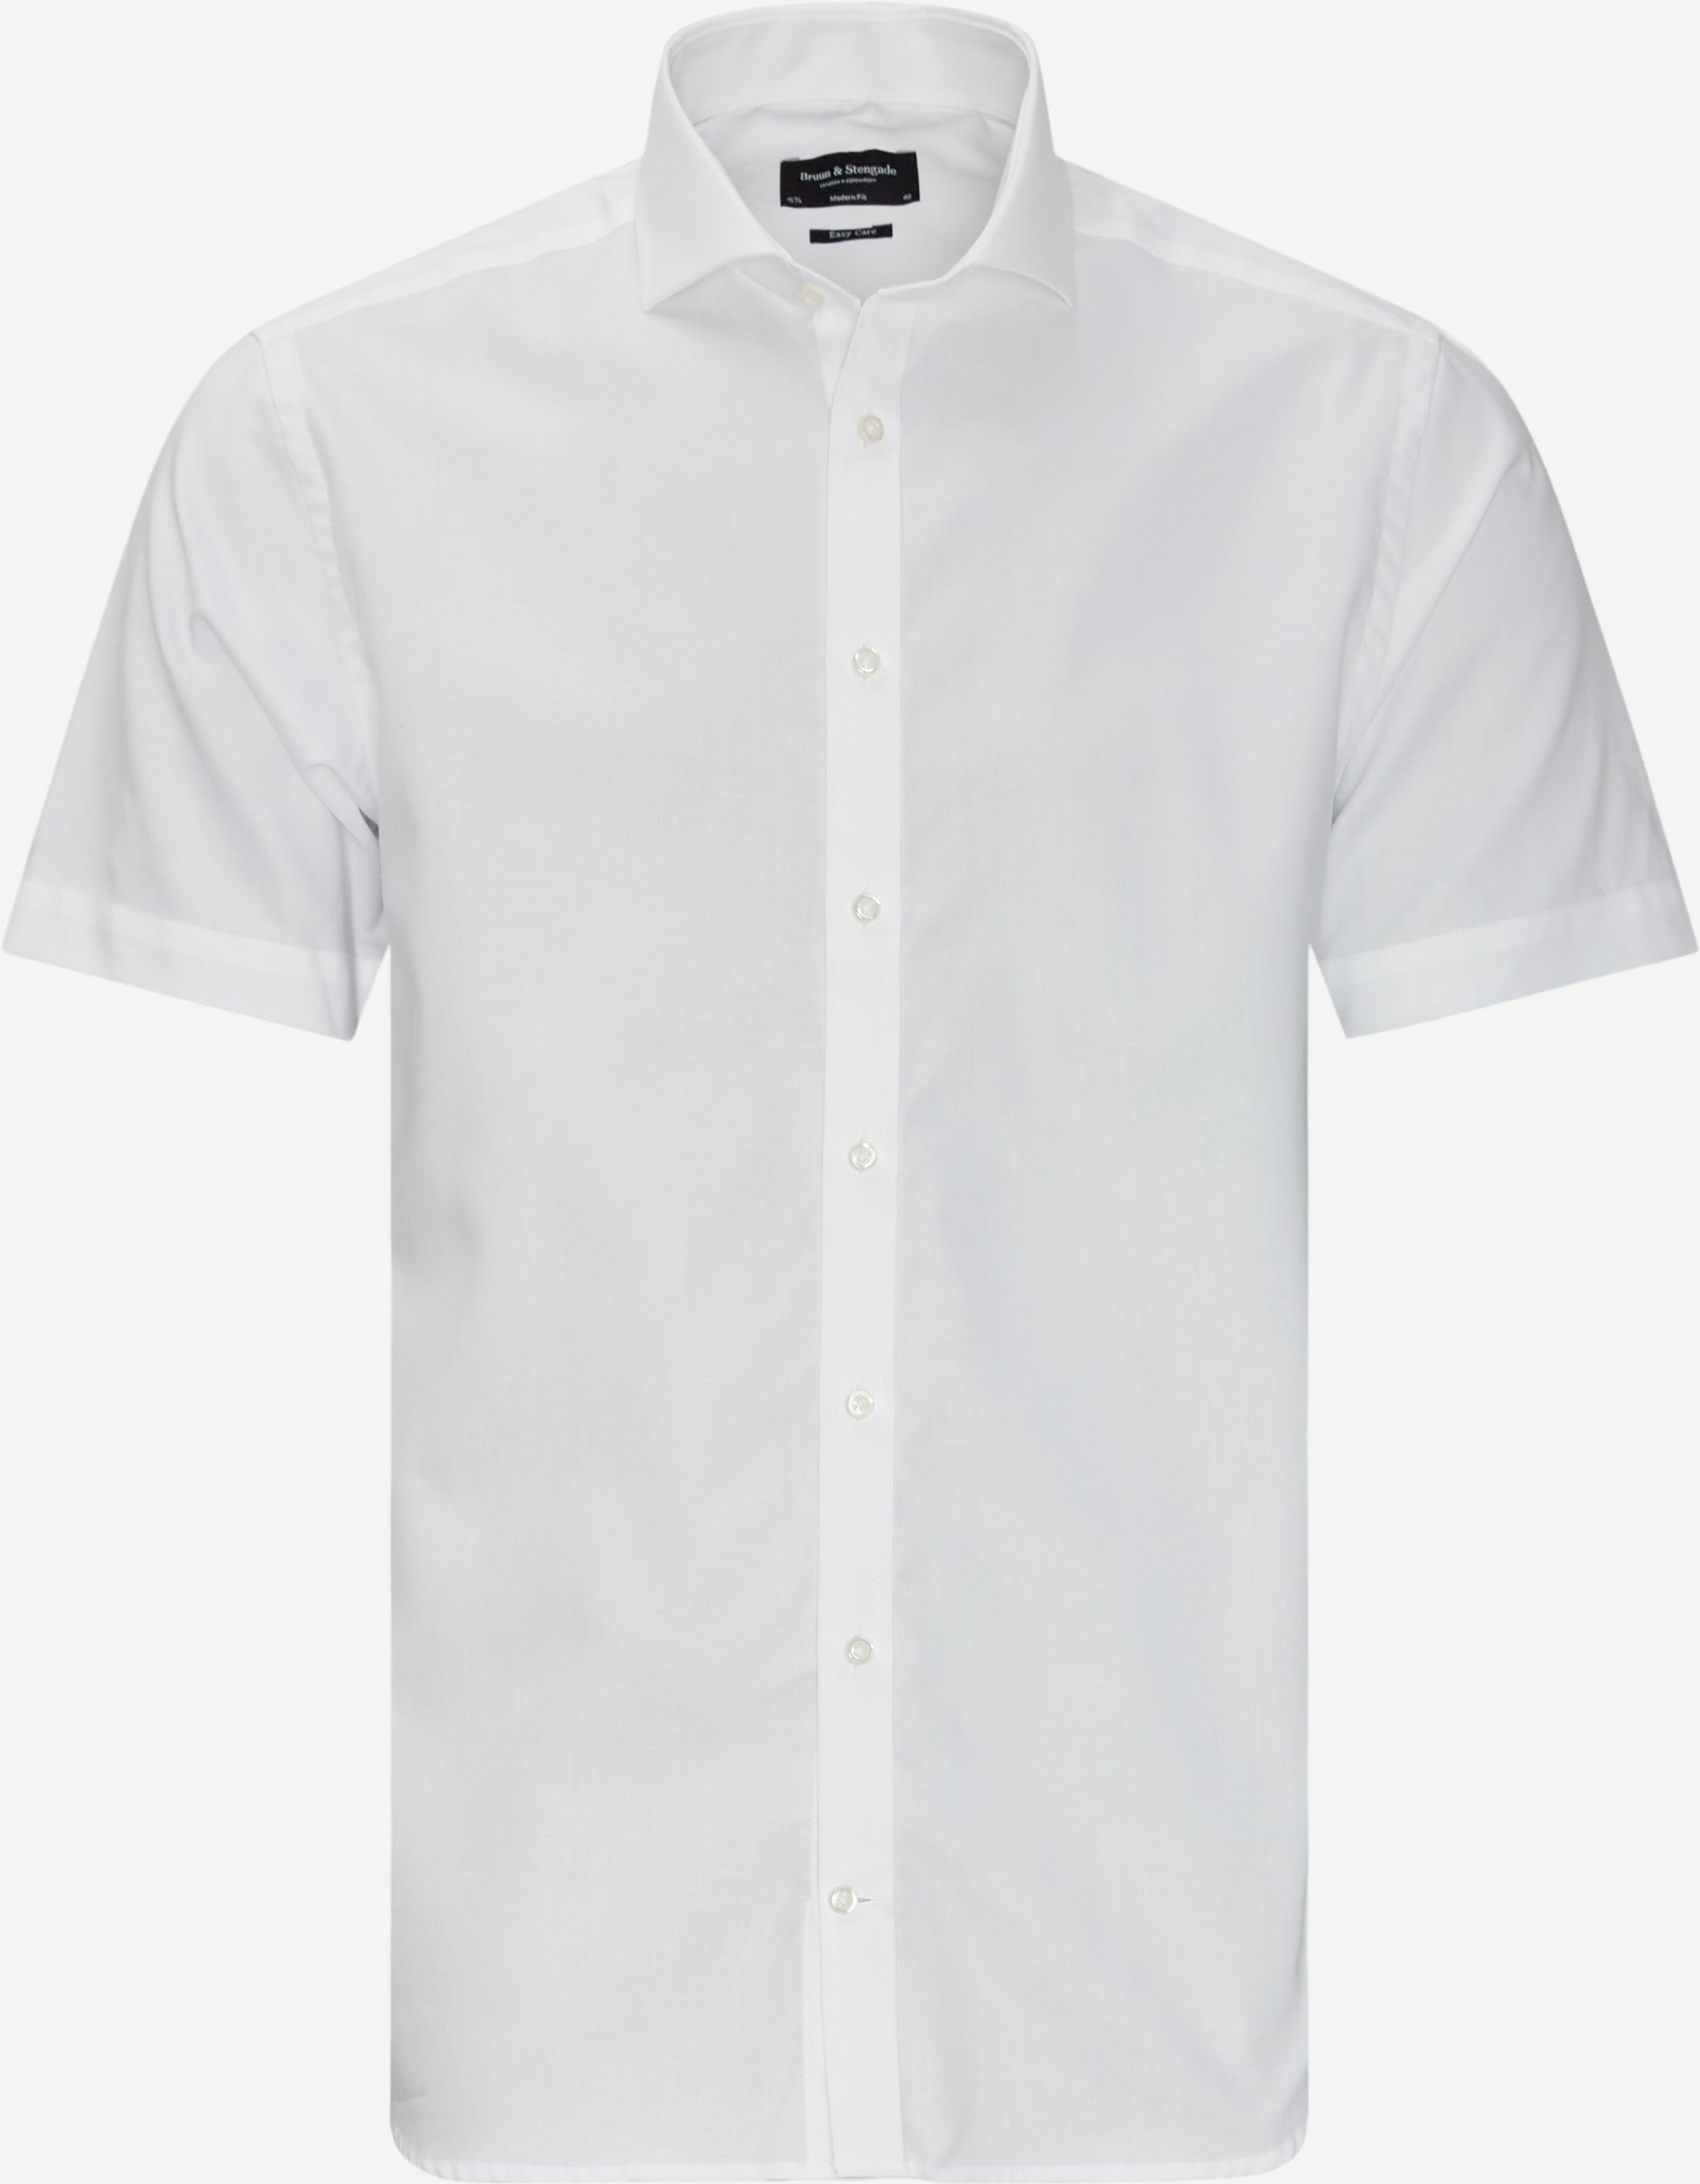 Willis Kortærmet Skjorte - Kortærmede skjorter - Modern fit - Hvid